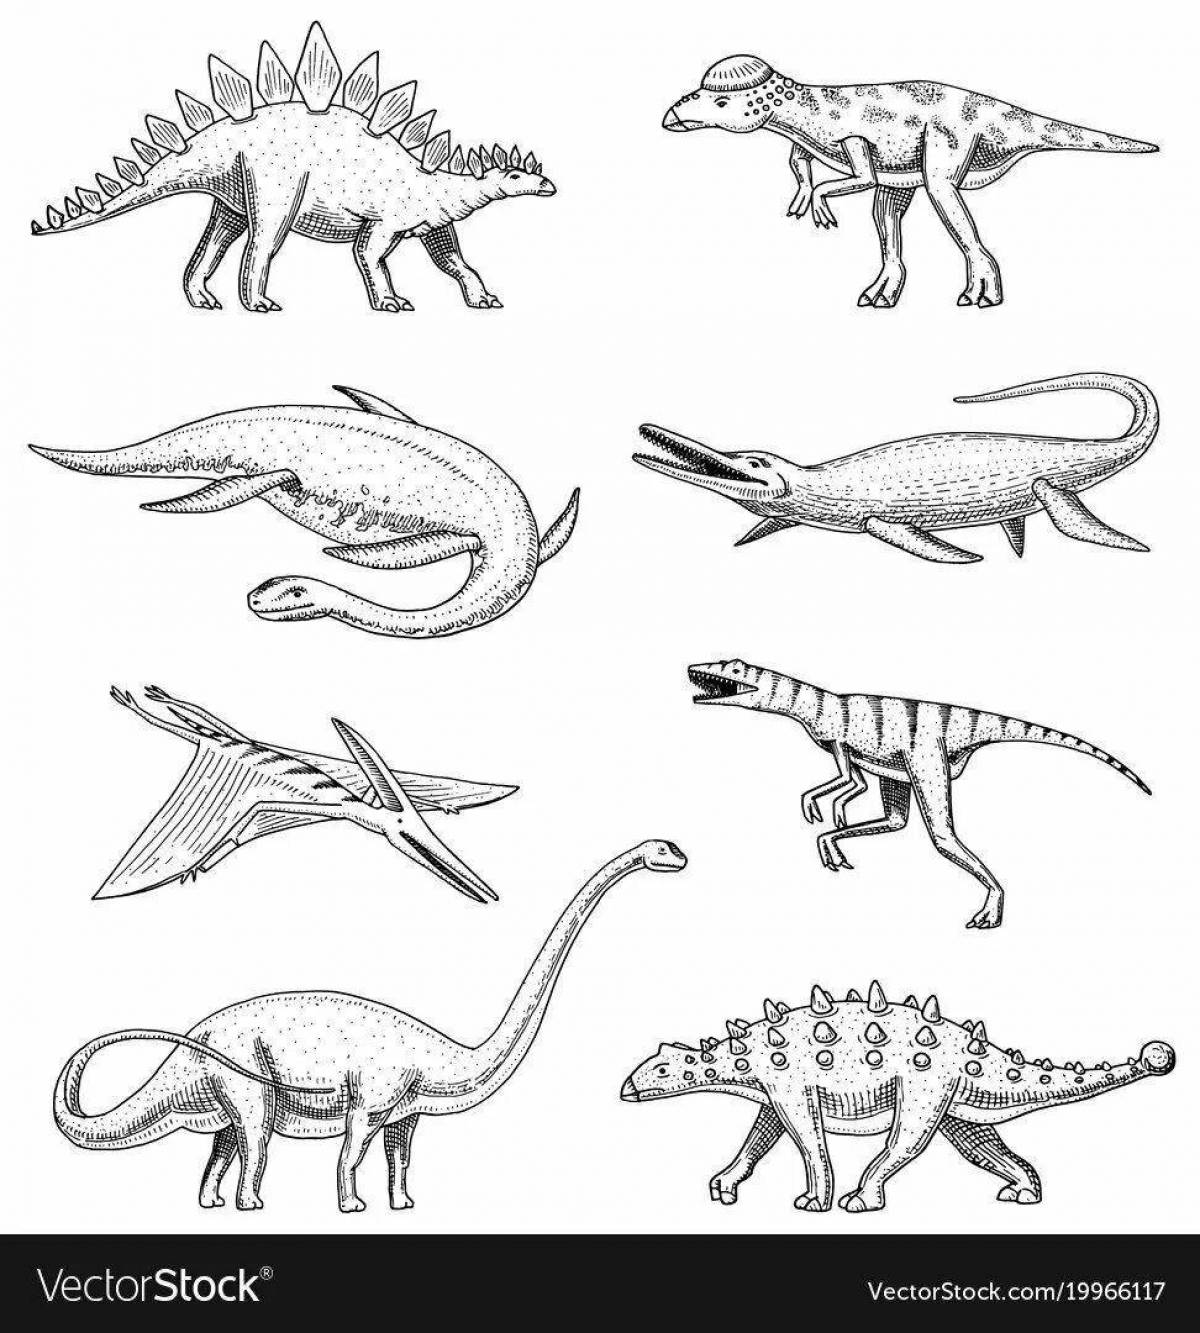 Игривая страница раскраски плавающего динозавра